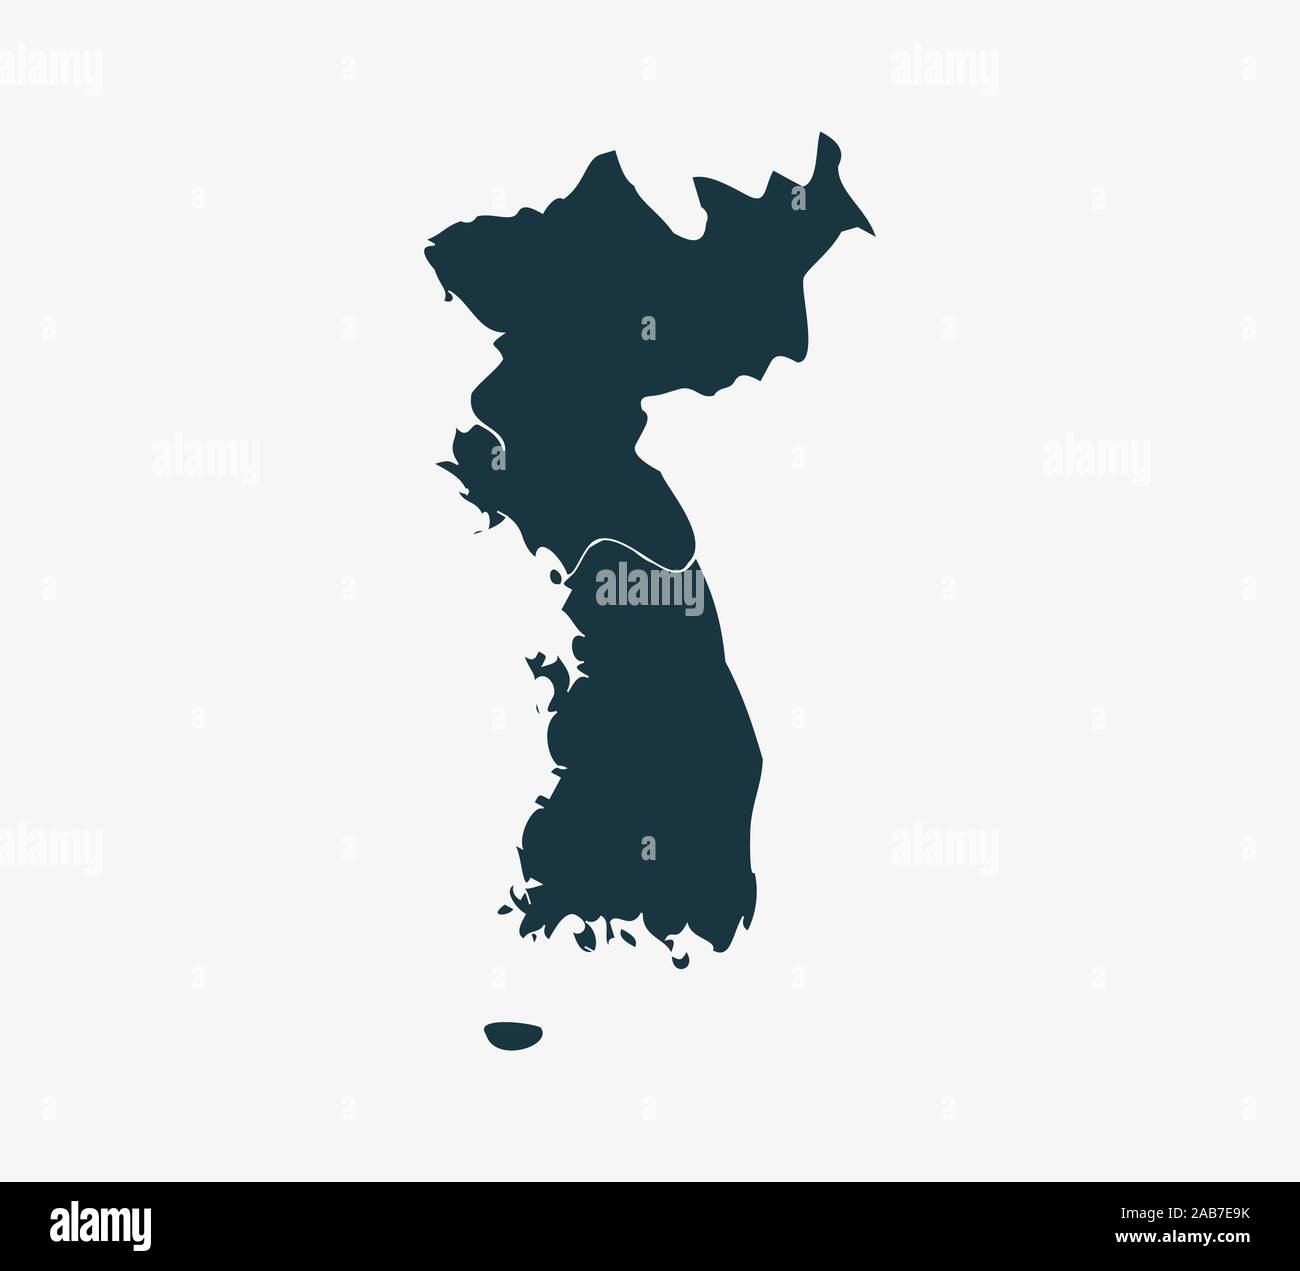 A Nord, Corea del Sud mappa su sfondo bianco. Illustrazione Vettoriale. Illustrazione Vettoriale